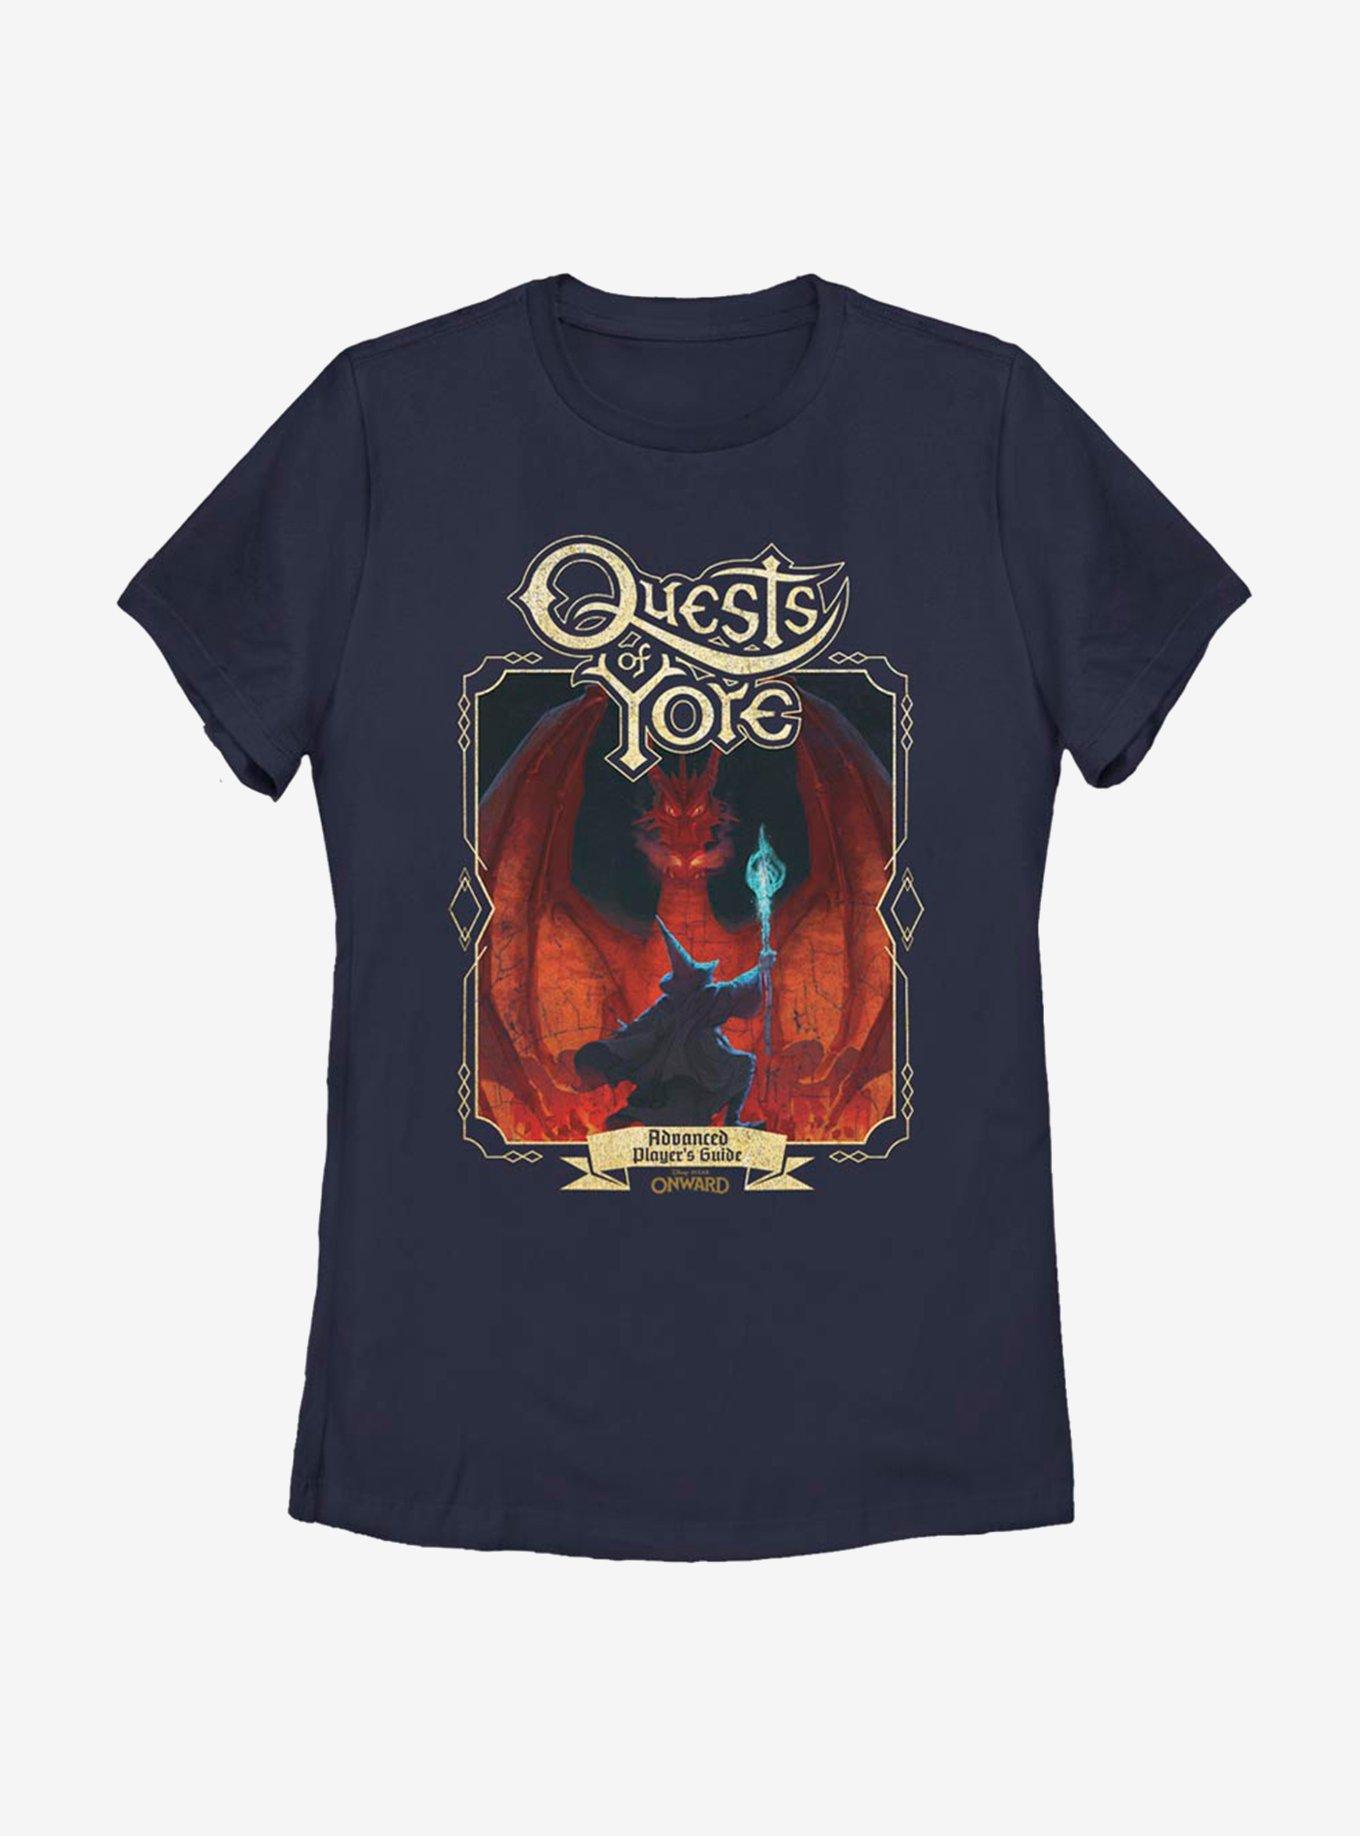 Disney Pixar Onward Quest Of Yore Cover Womens T-Shirt, NAVY, hi-res